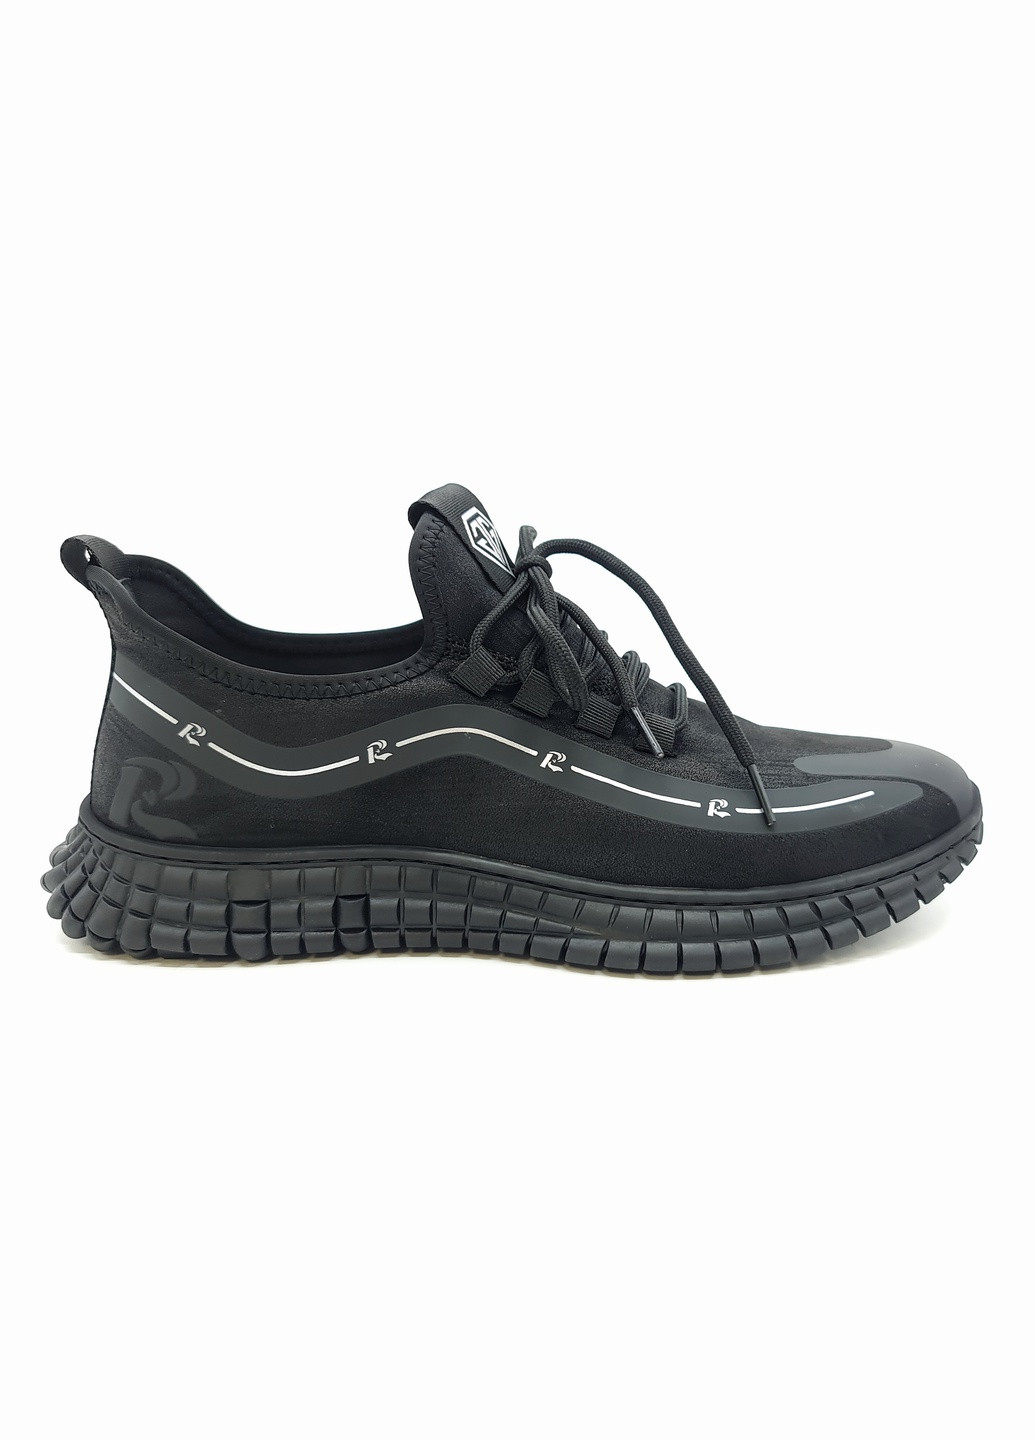 Черные всесезонные мужские кроссовки черные текстиль ya-17-1 28 см(р) Yalasou